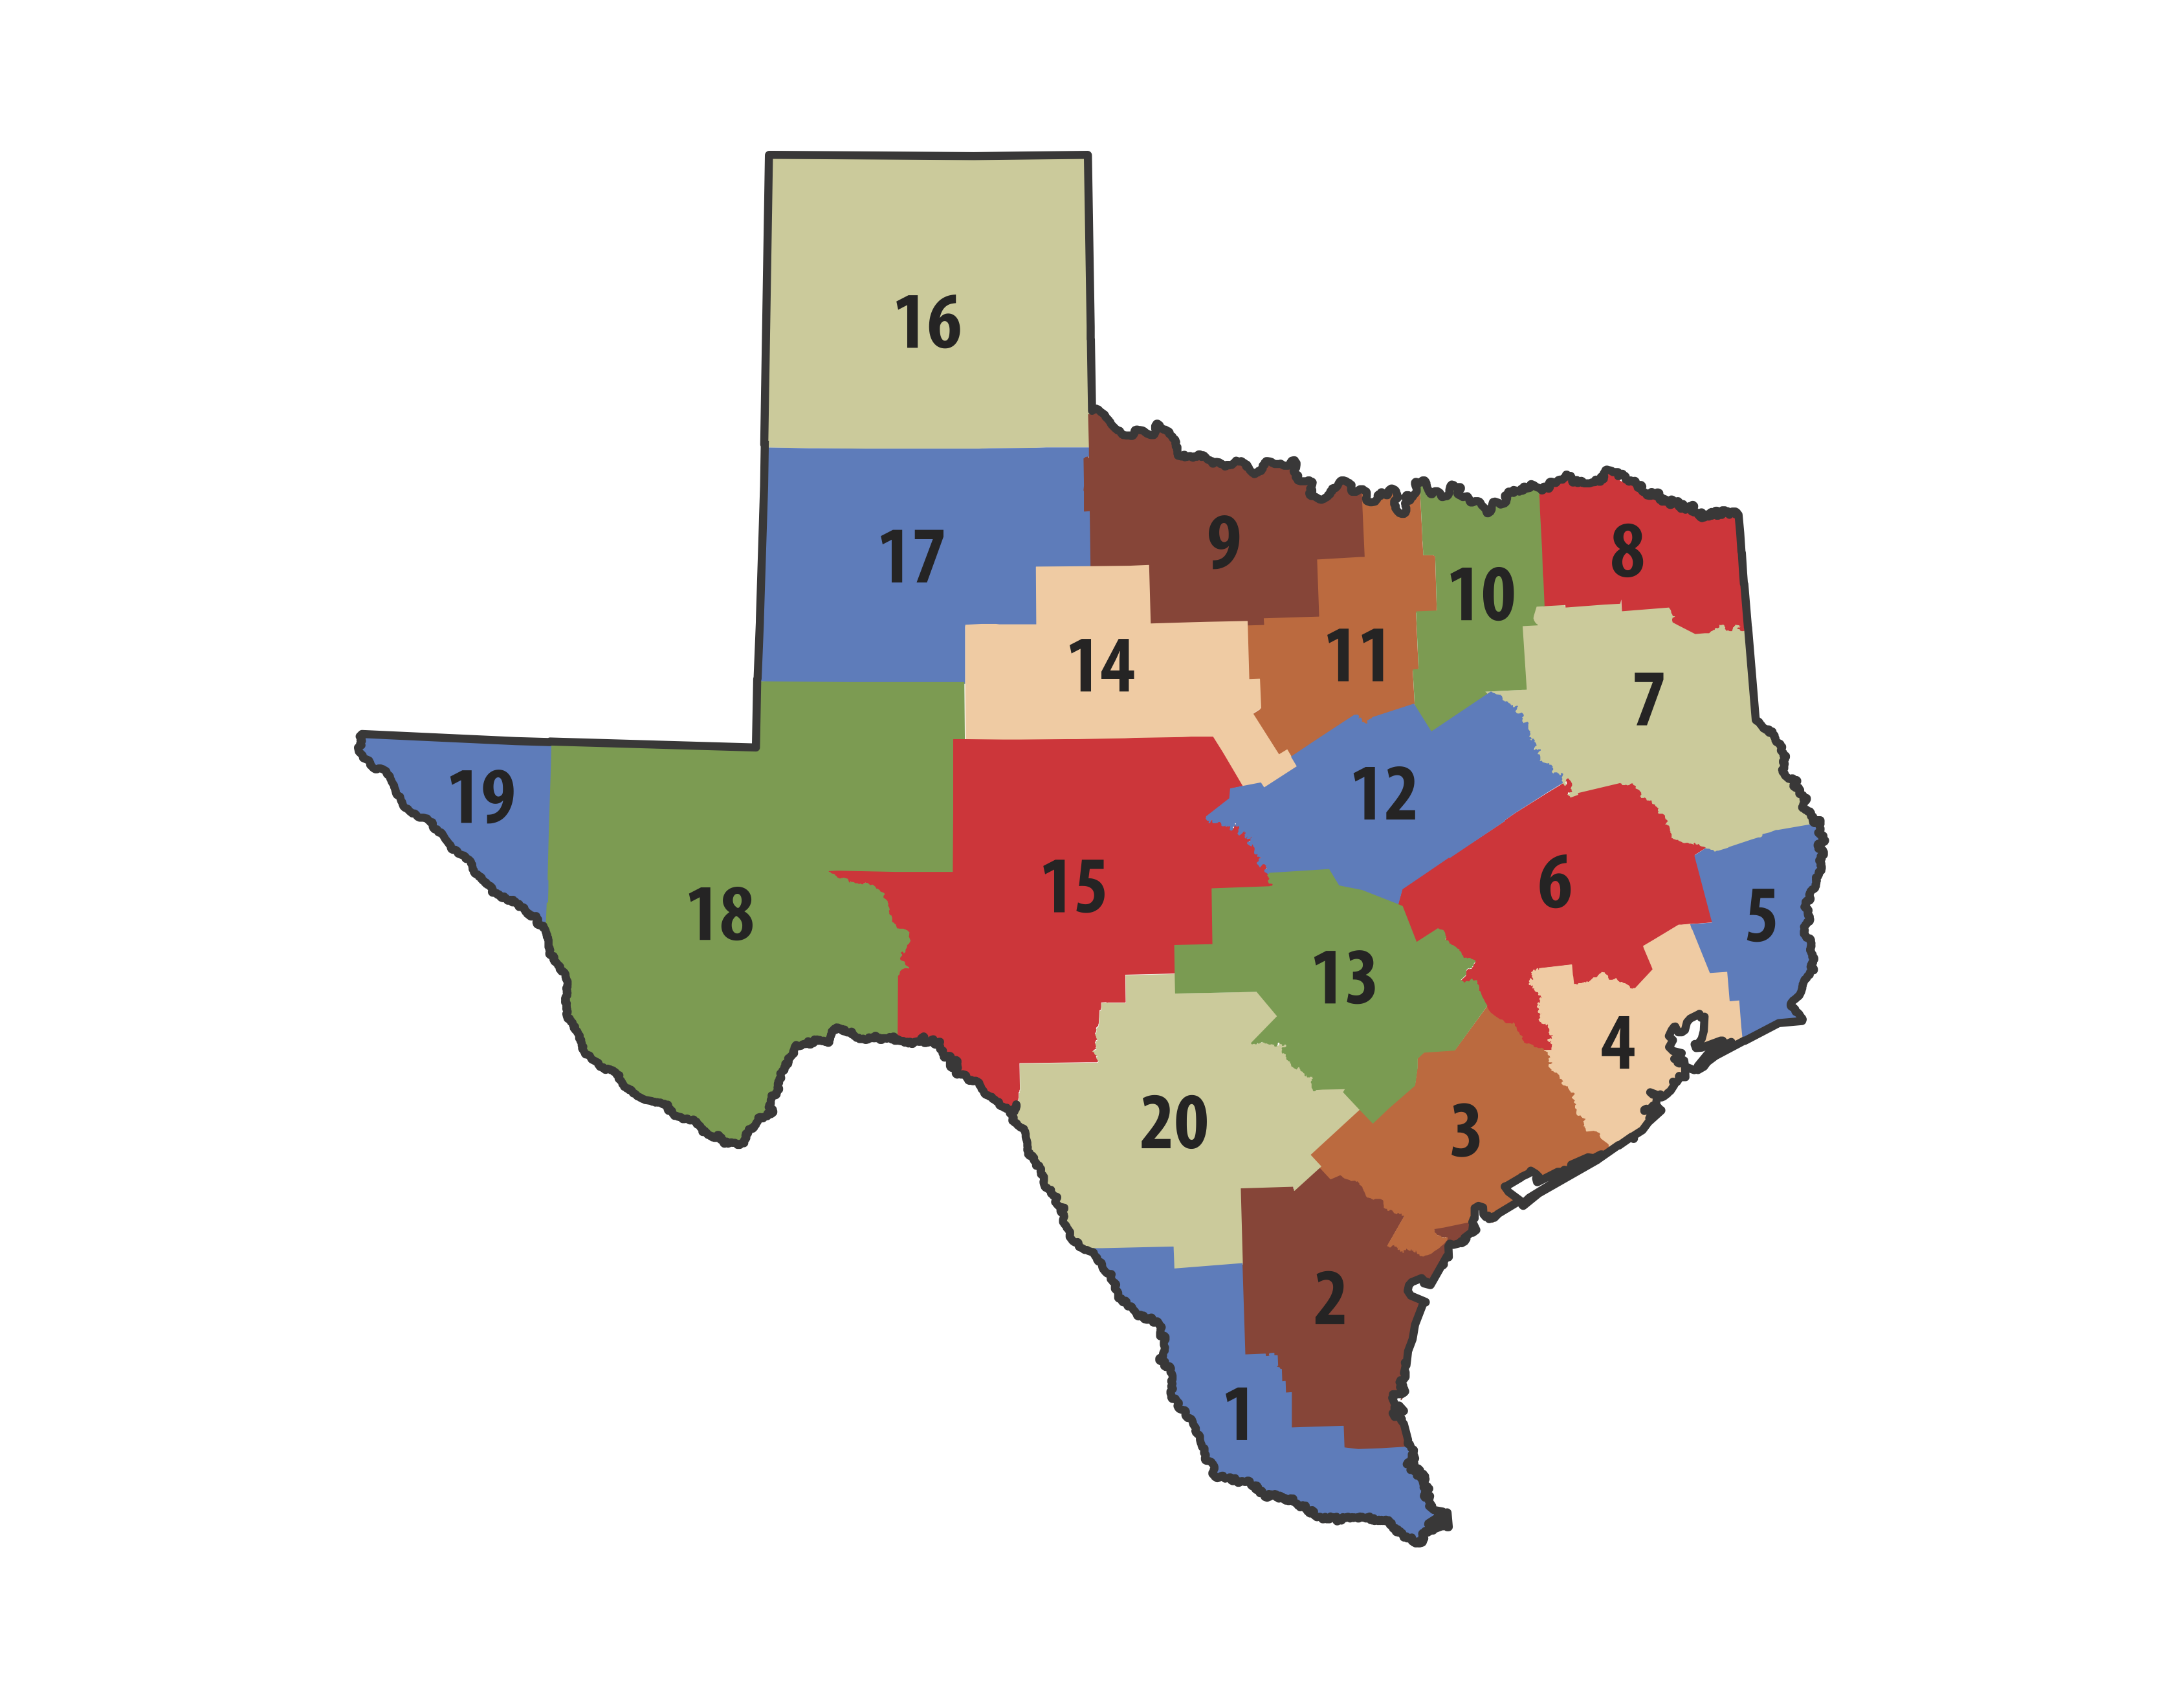 Texas clickable map